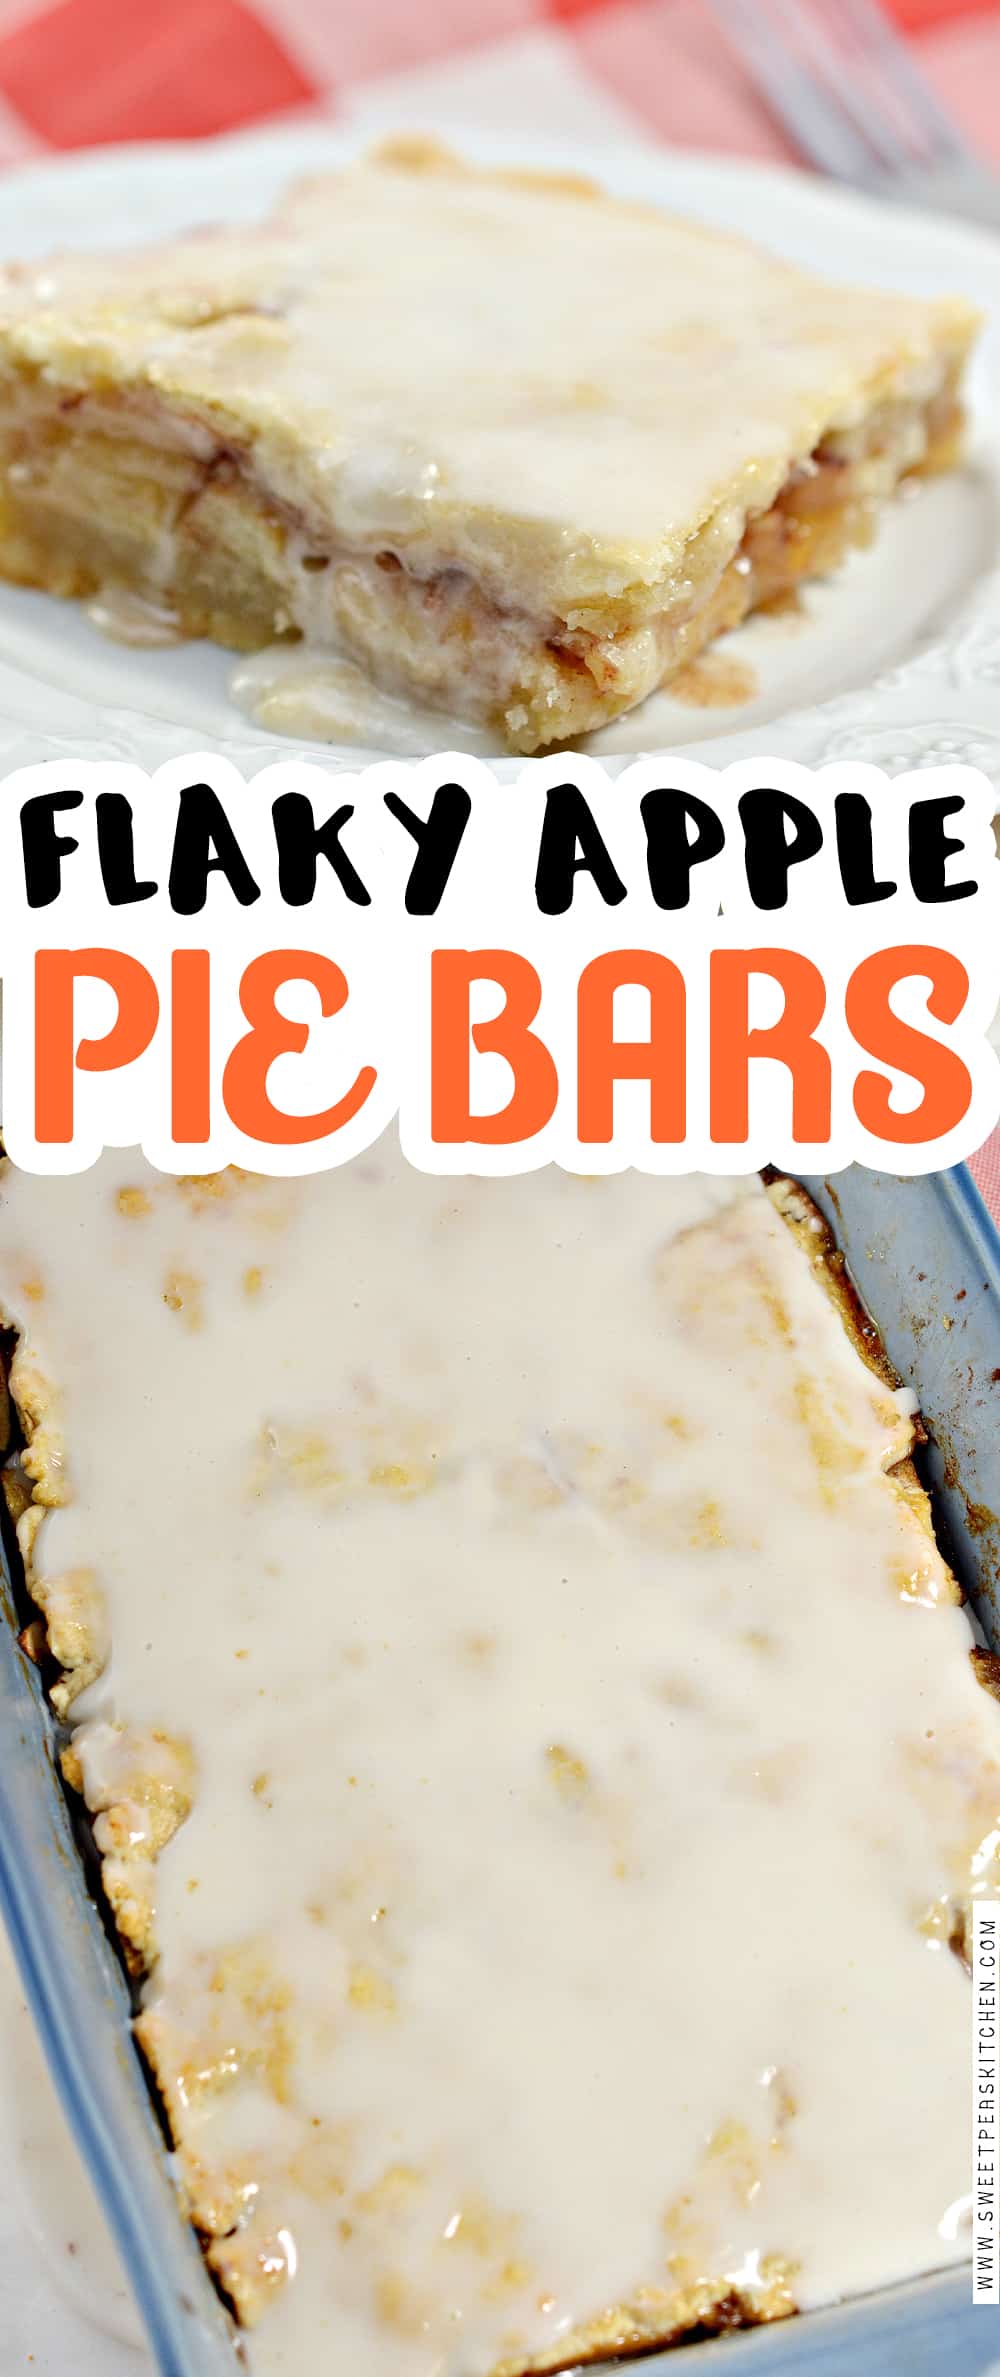 Flaky Apple Pie Bars